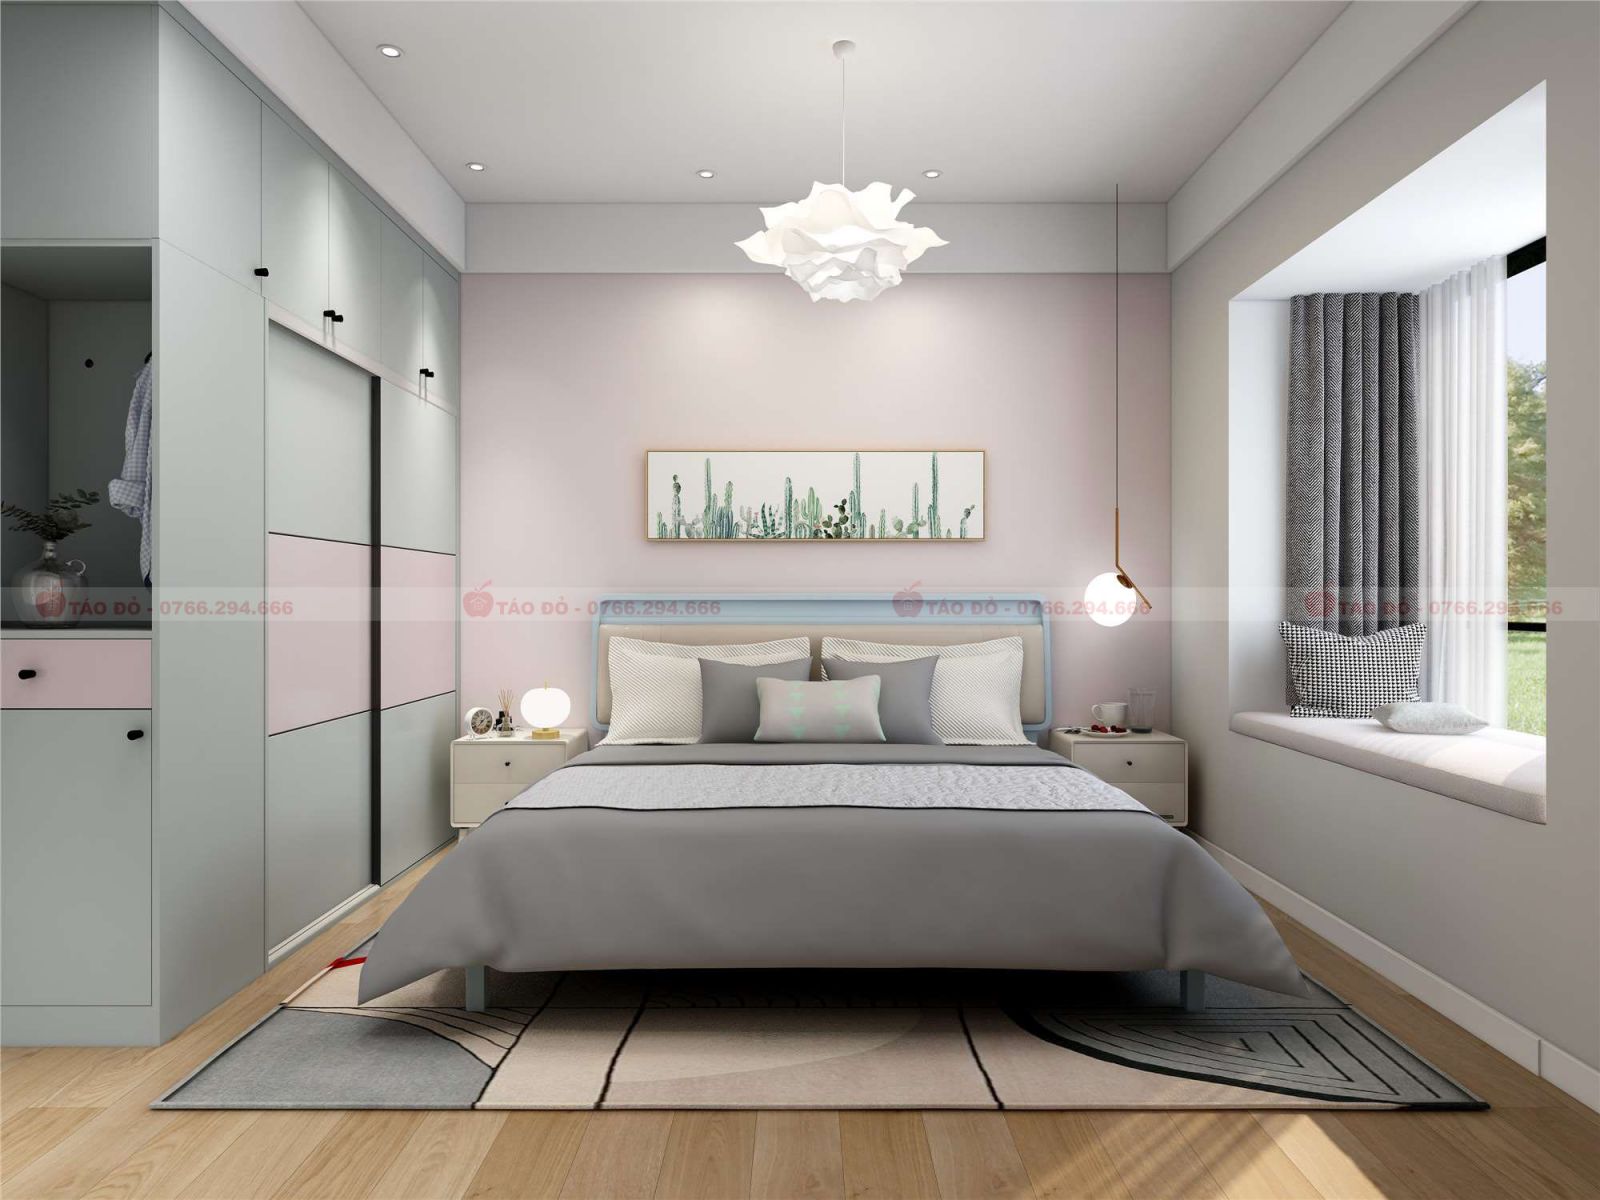 Thiết kế nội thất khu vực phòng ngủ